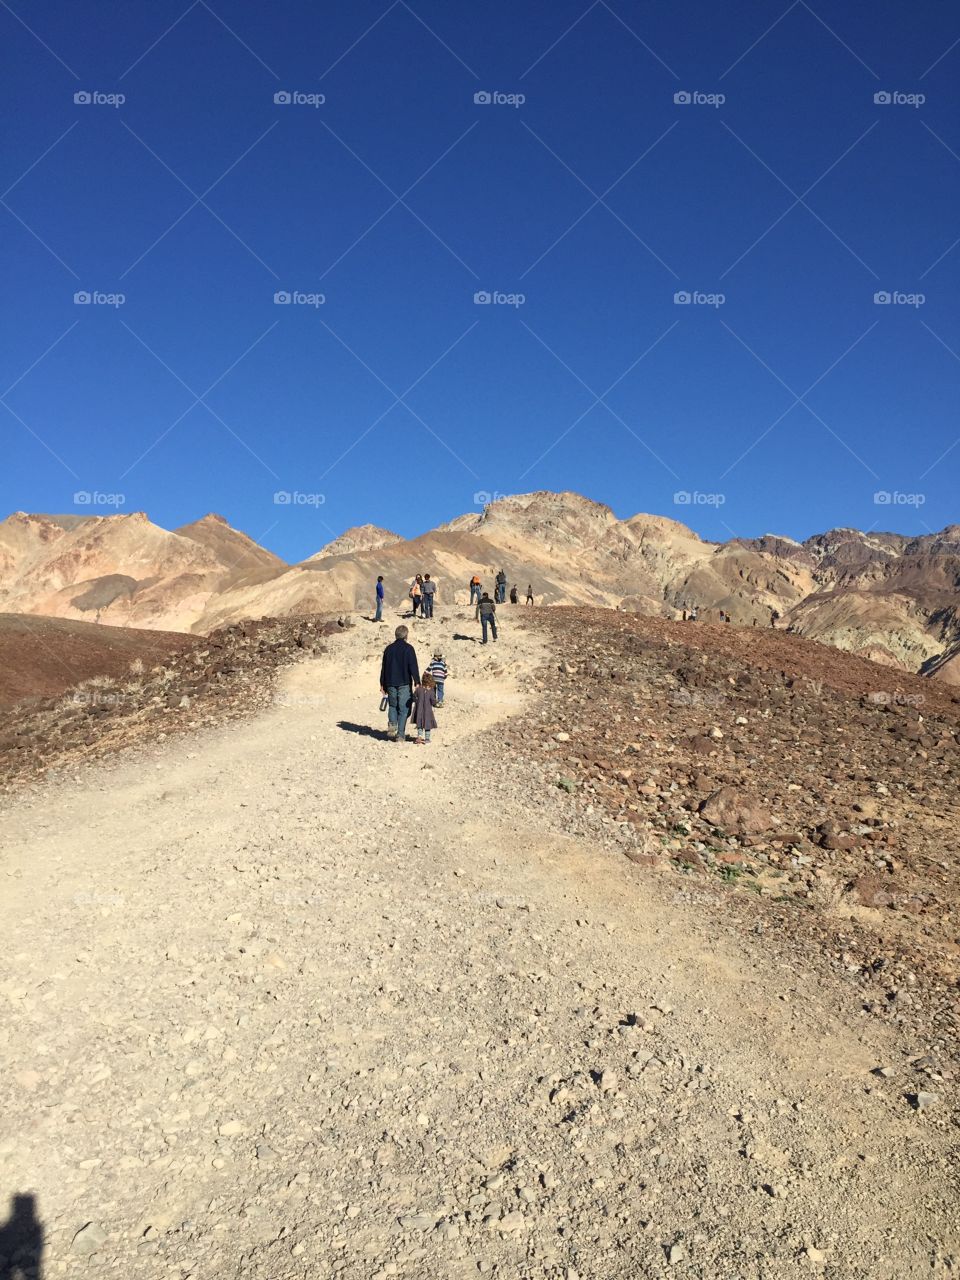 Hiking up a desert hill